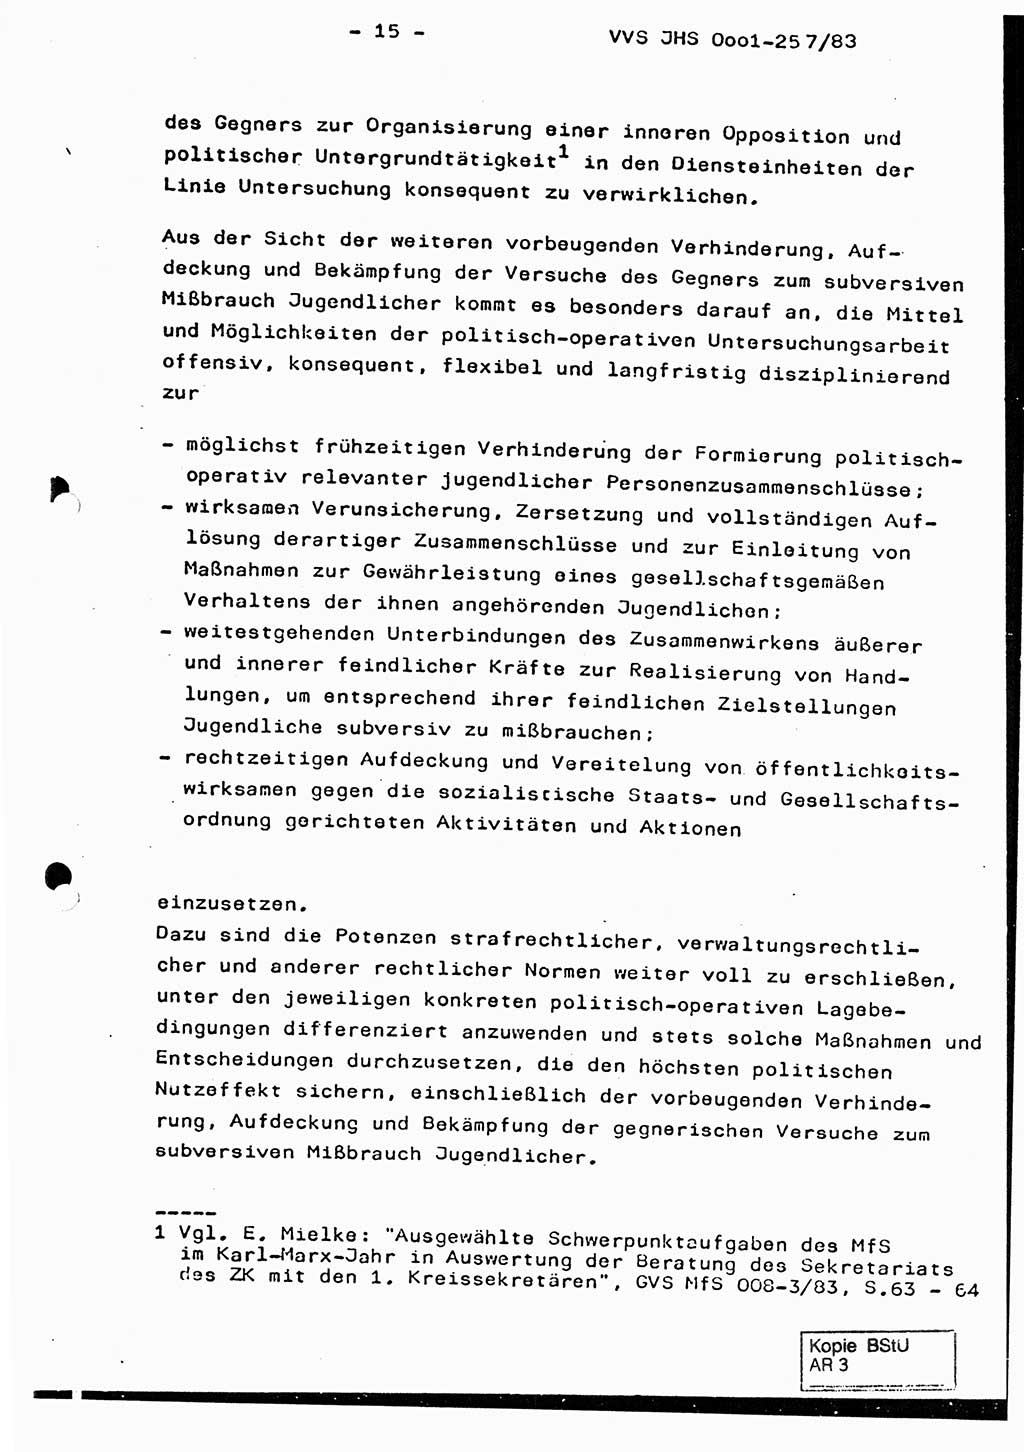 Dissertation, Oberst Helmut Lubas (BV Mdg.), Oberstleutnant Manfred Eschberger (HA IX), Oberleutnant Hans-Jürgen Ludwig (JHS), Ministerium für Staatssicherheit (MfS) [Deutsche Demokratische Republik (DDR)], Juristische Hochschule (JHS), Vertrauliche Verschlußsache (VVS) o001-257/83, Potsdam 1983, Seite 15 (Diss. MfS DDR JHS VVS o001-257/83 1983, S. 15)